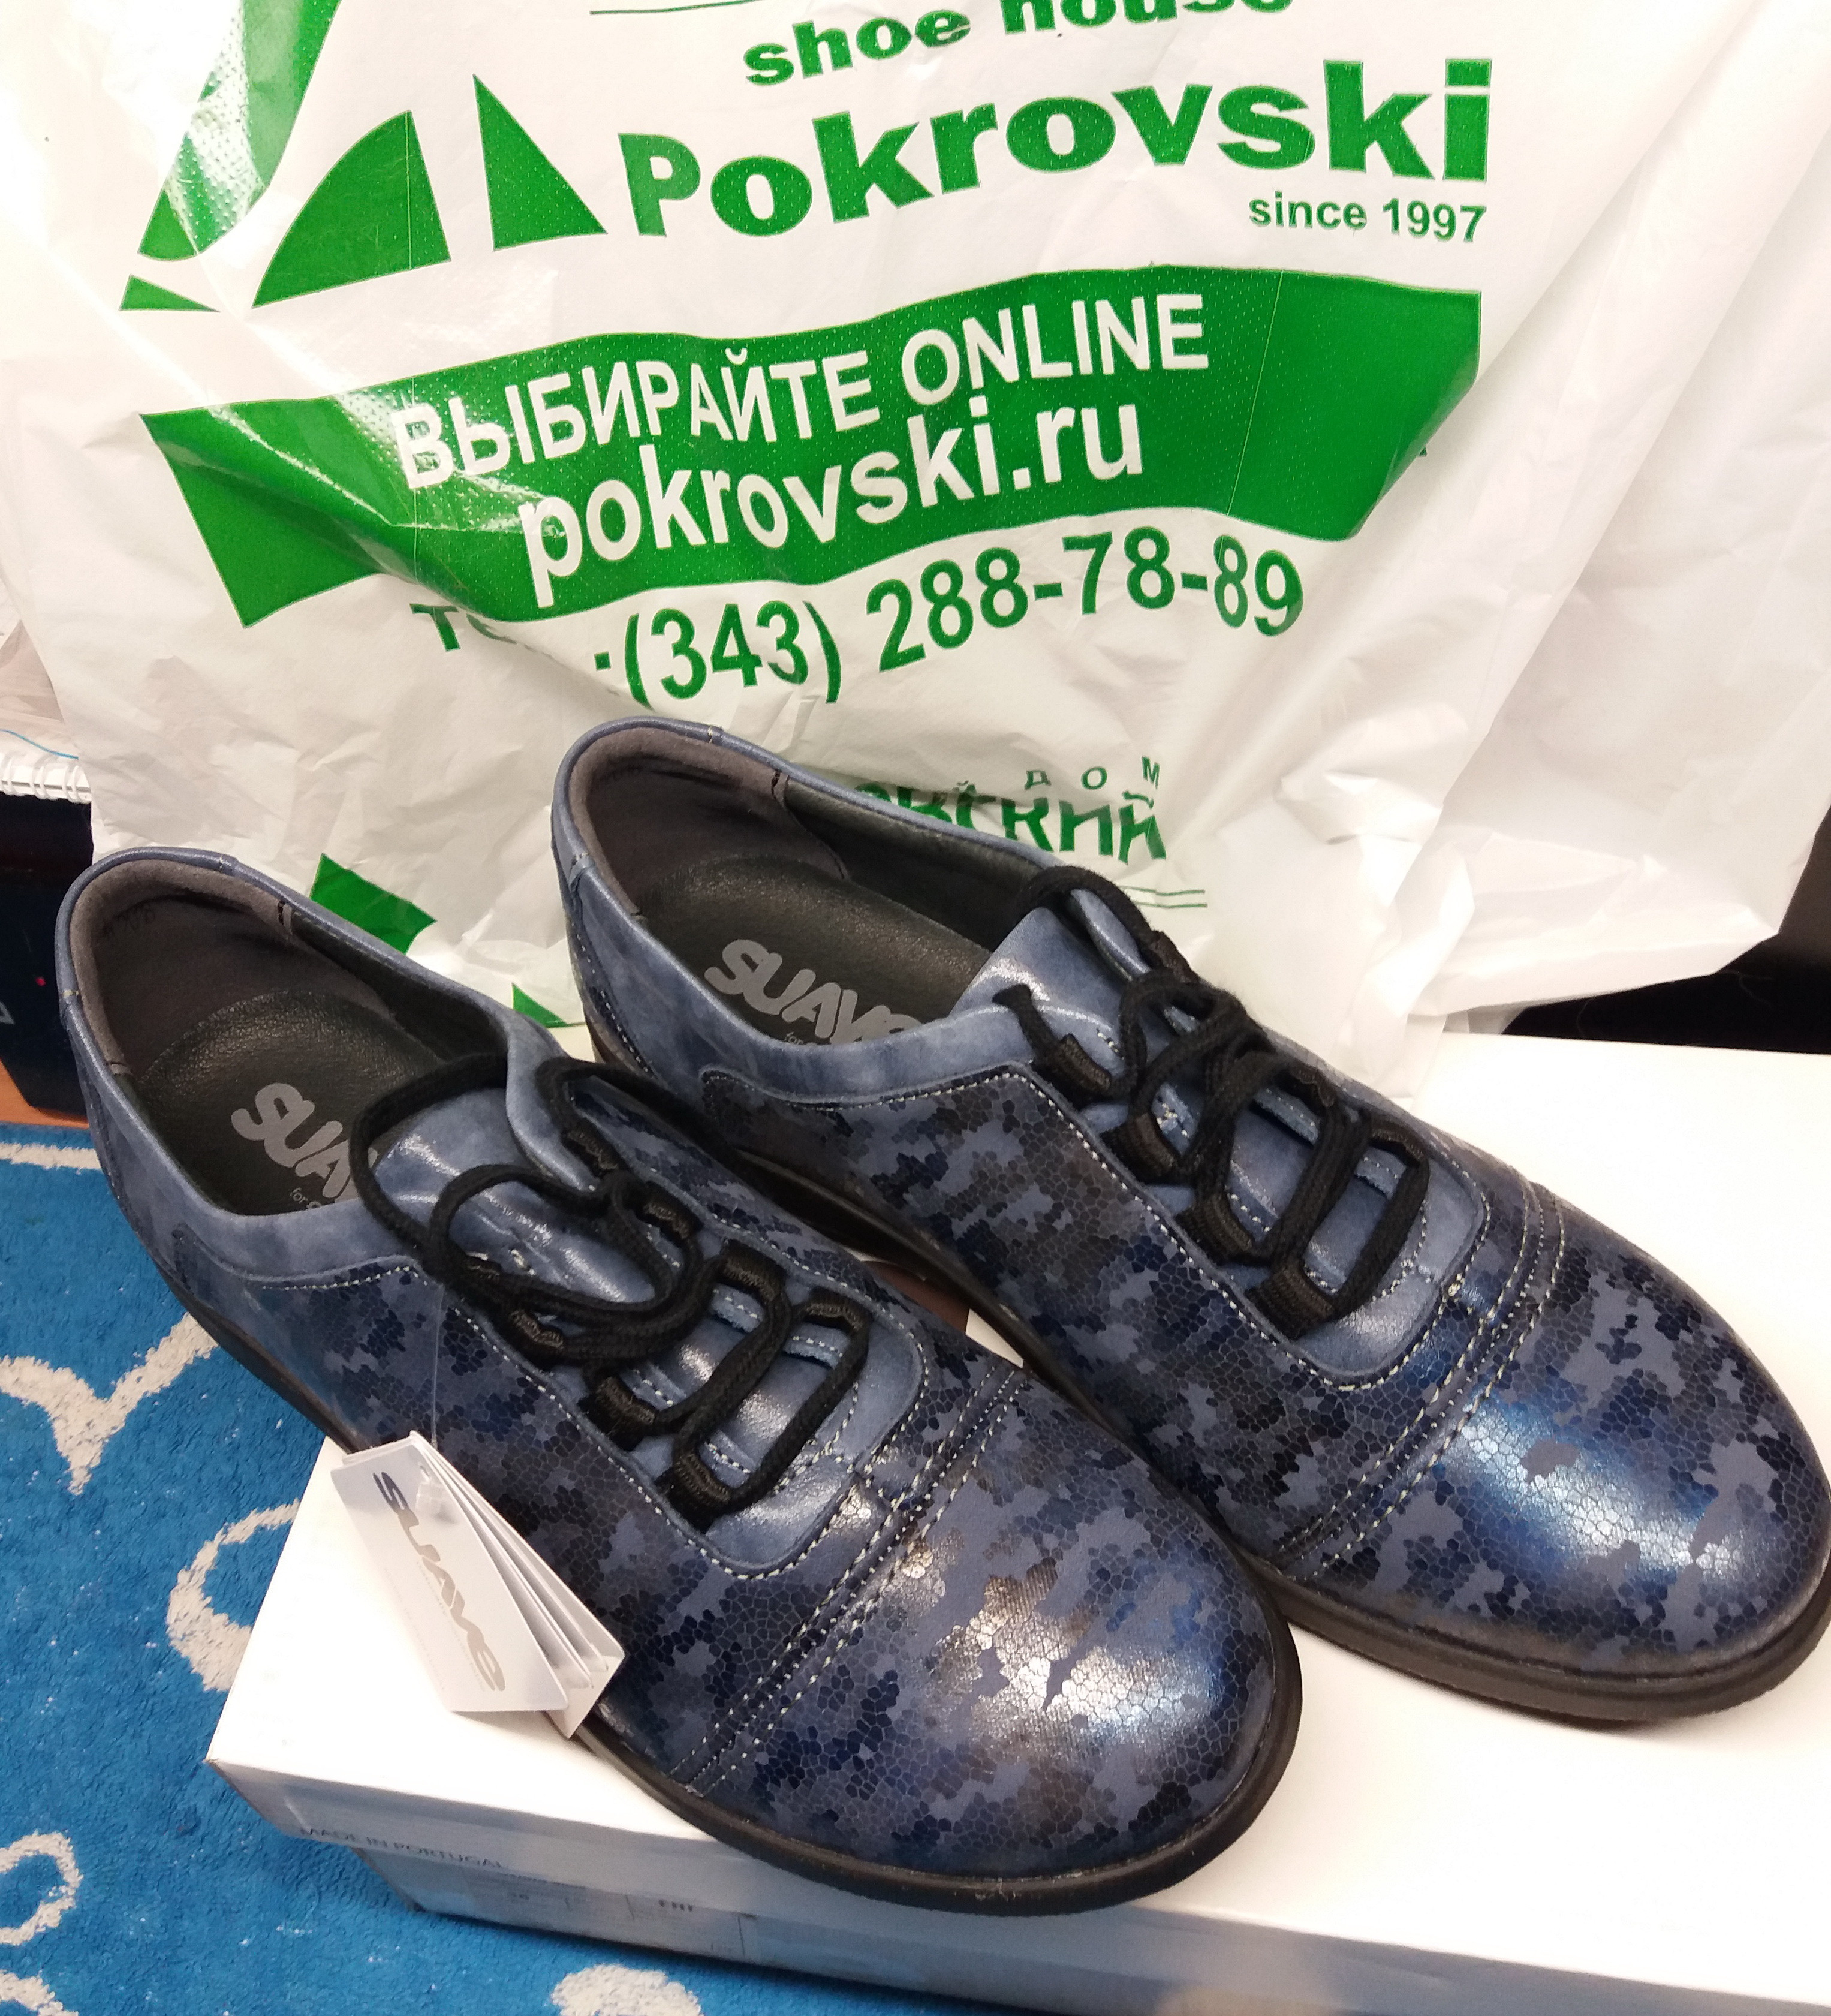 Покровский Обувь Интернет Магазин